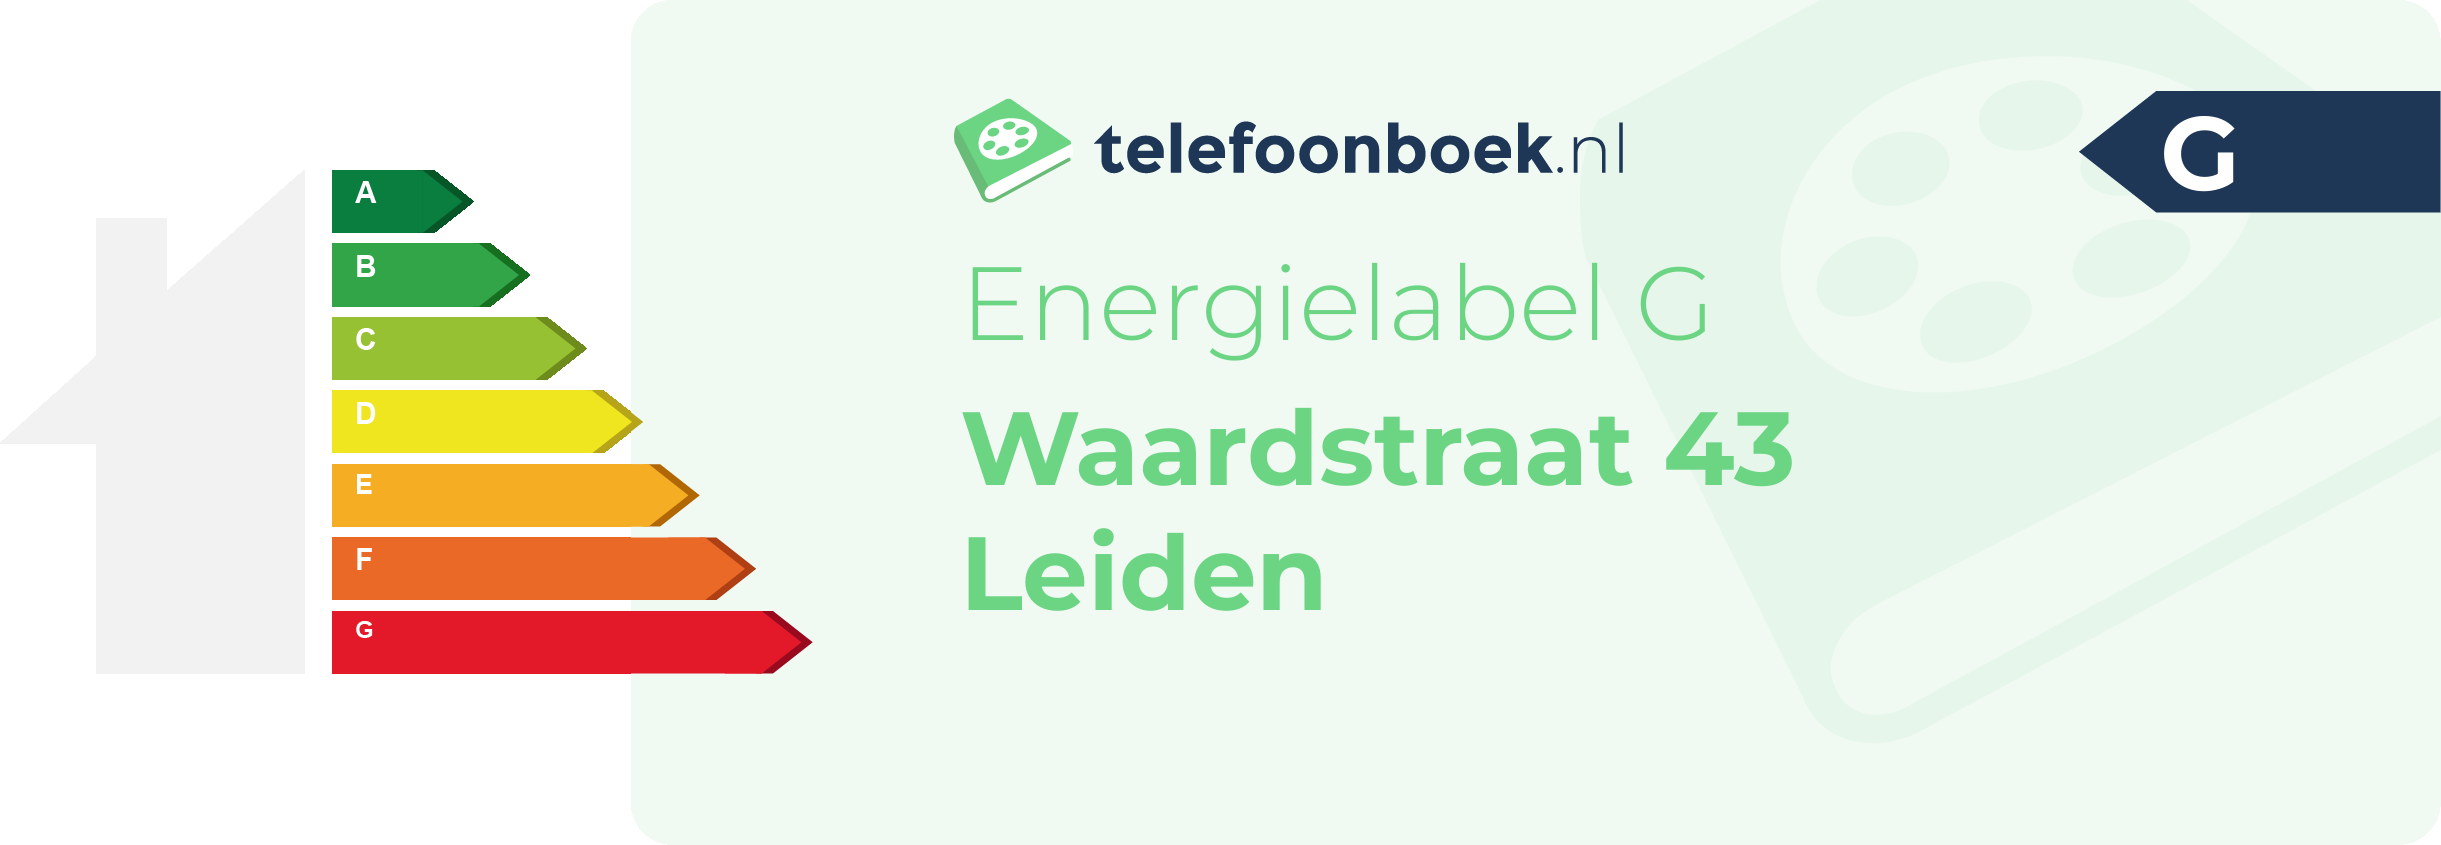 Energielabel Waardstraat 43 Leiden